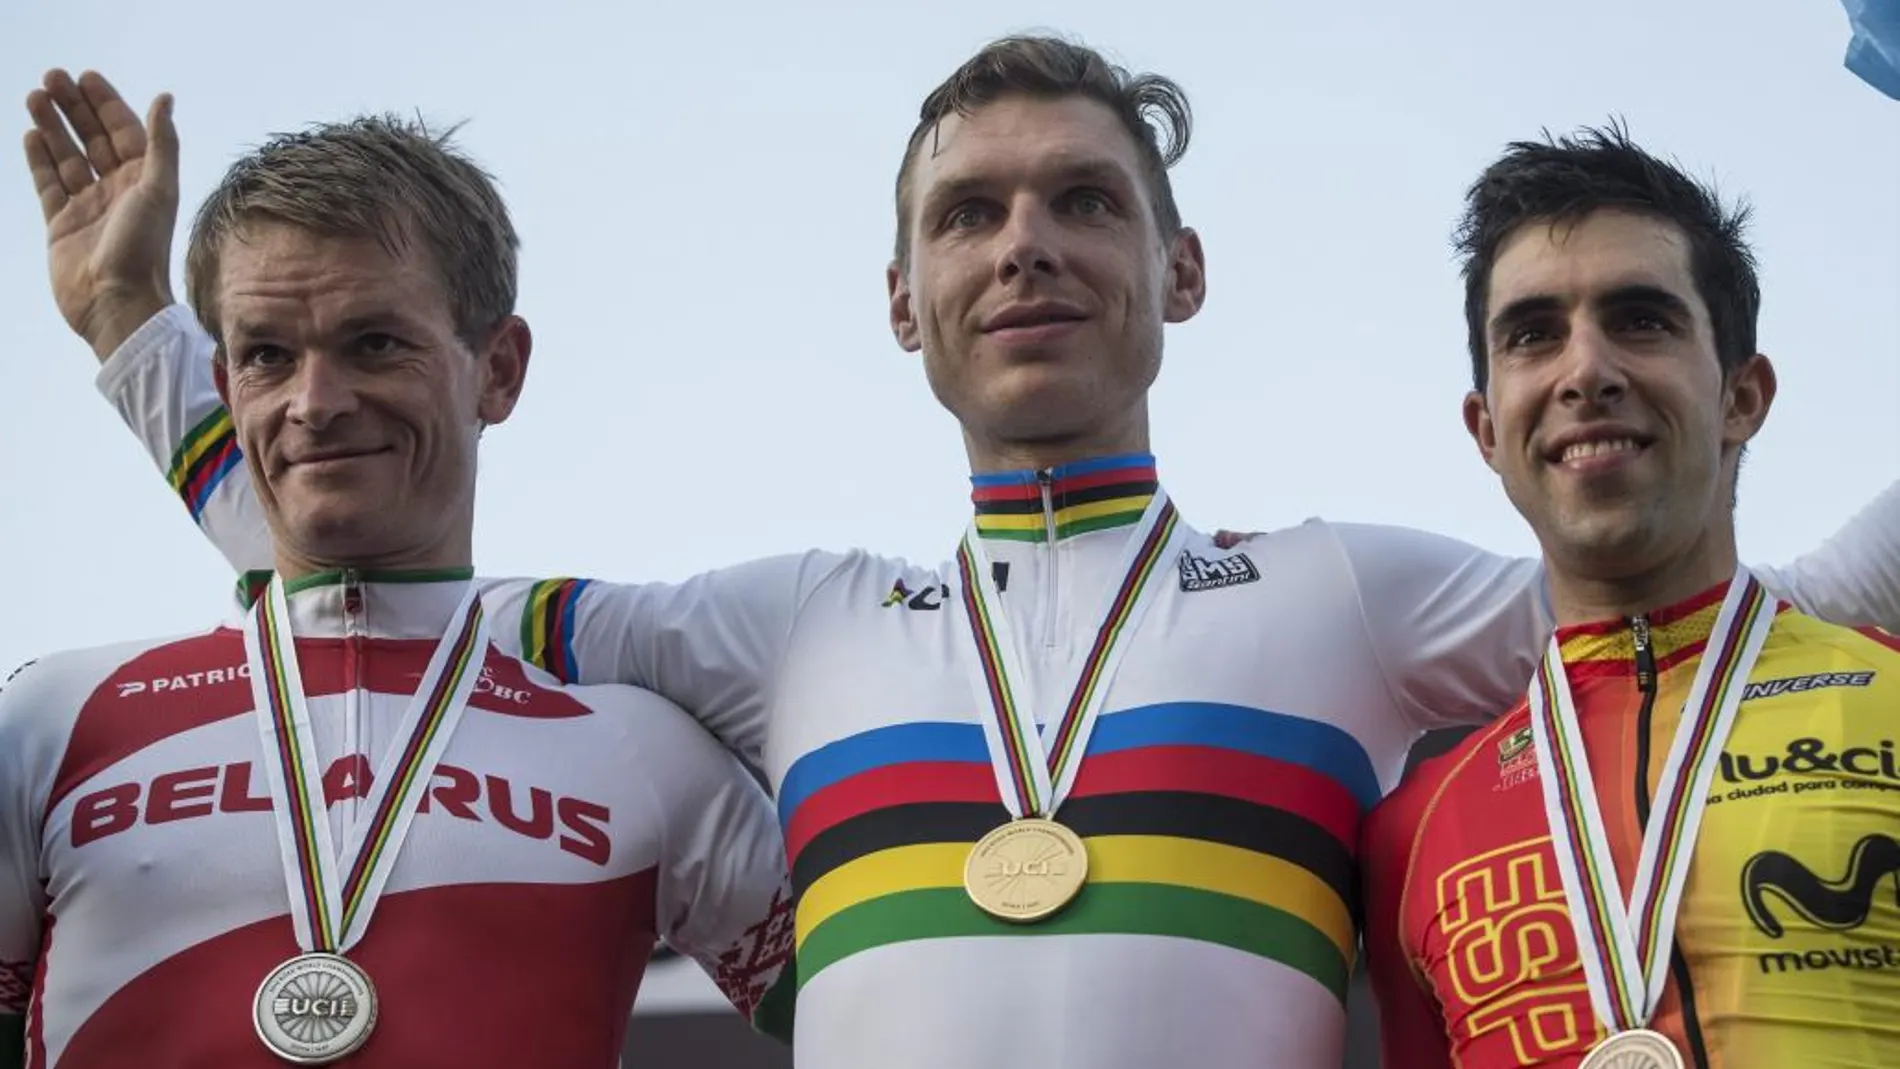 El bielorruso Vasil Kiryienka, el alemán Tony Martin y el español Jonathan Castroviejo celebran su plata, oro y bronce